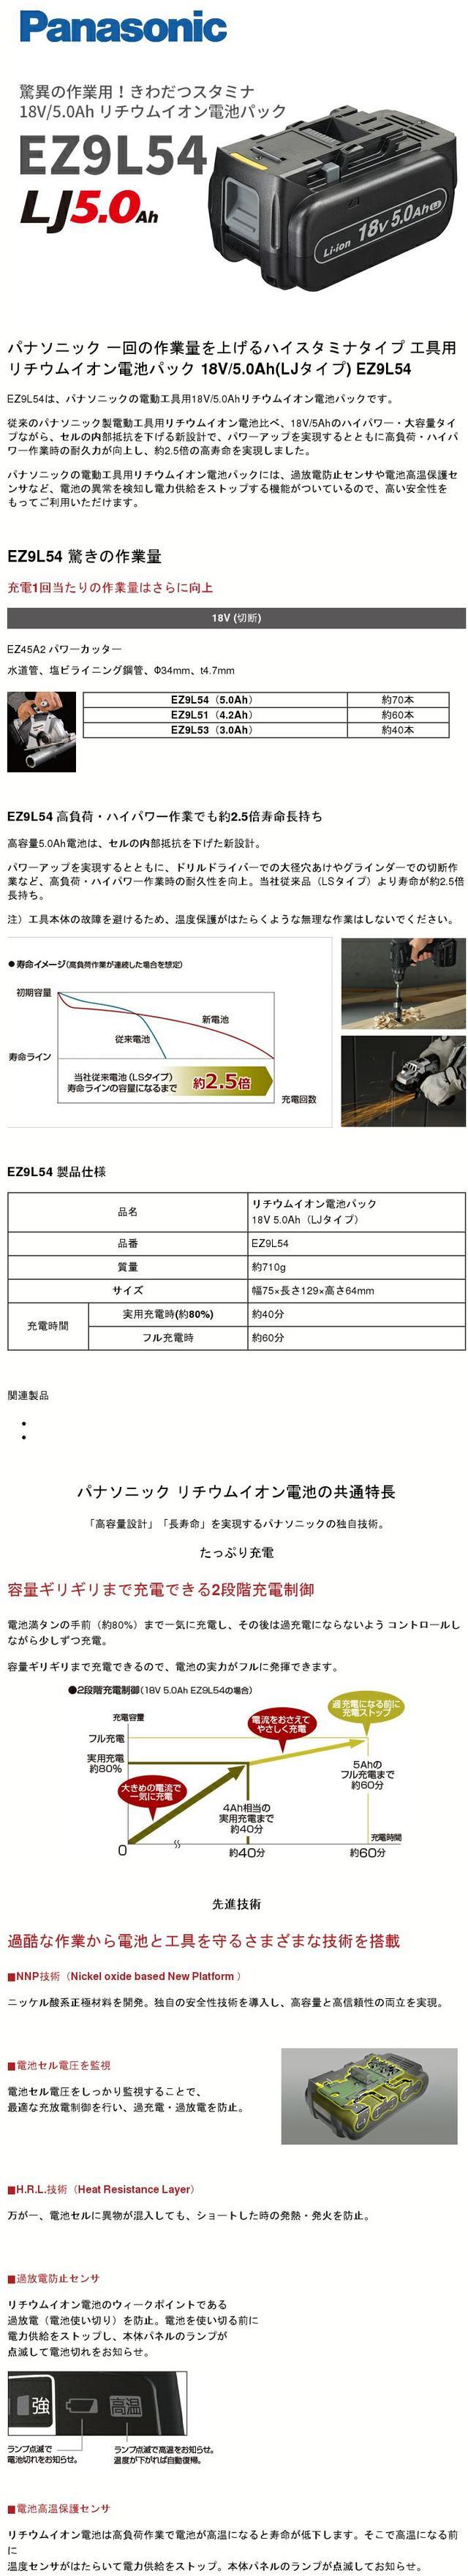 ☆未使用品2個セット☆ Panasonic パナソニック 18V 5.0Ah リチウムイオン電池パック EZ9L54 LJタイプ リチュウムイオンバッテリー 63580